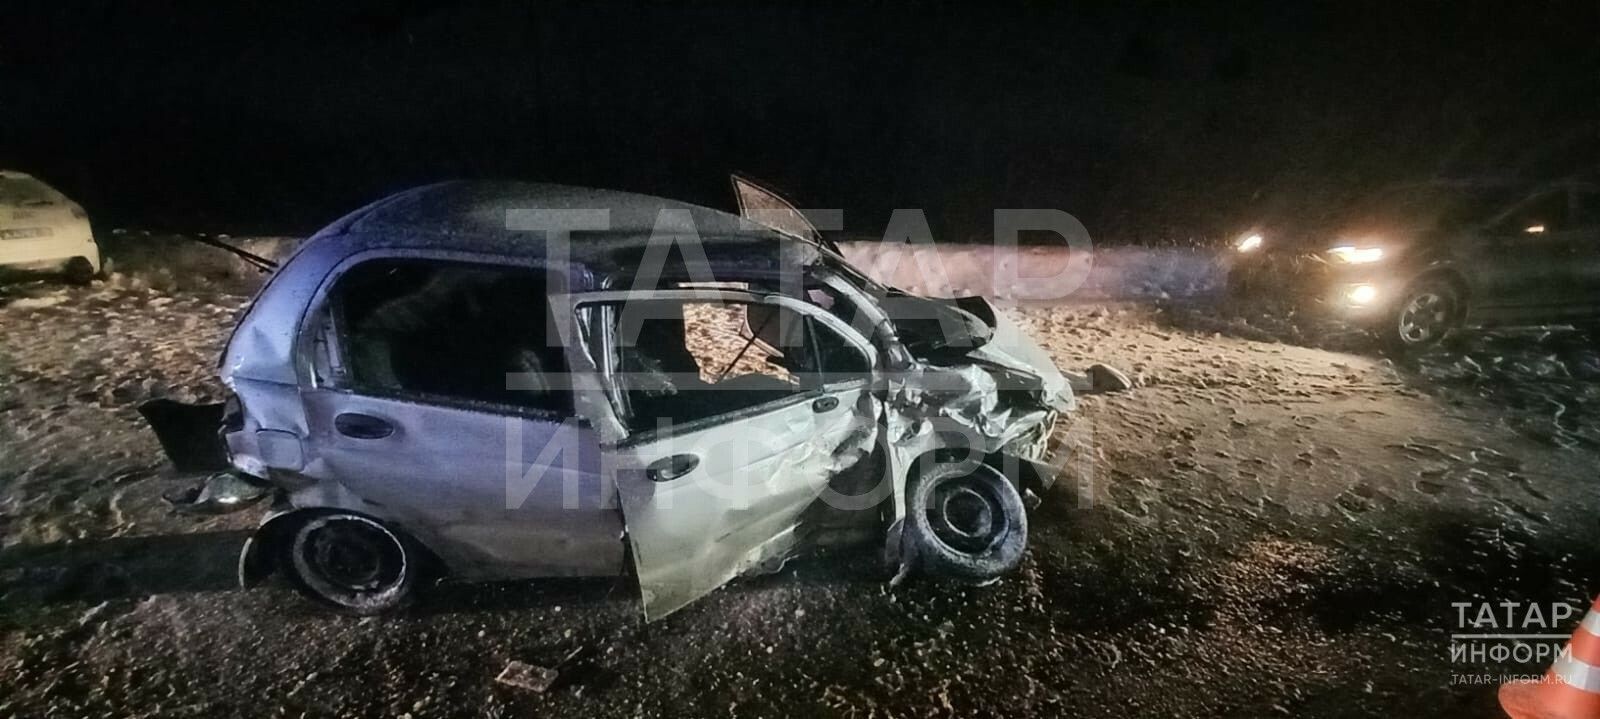 В ДТП на трассе в Татарстане погиб 25-летний пассажир, двое детей пострадали